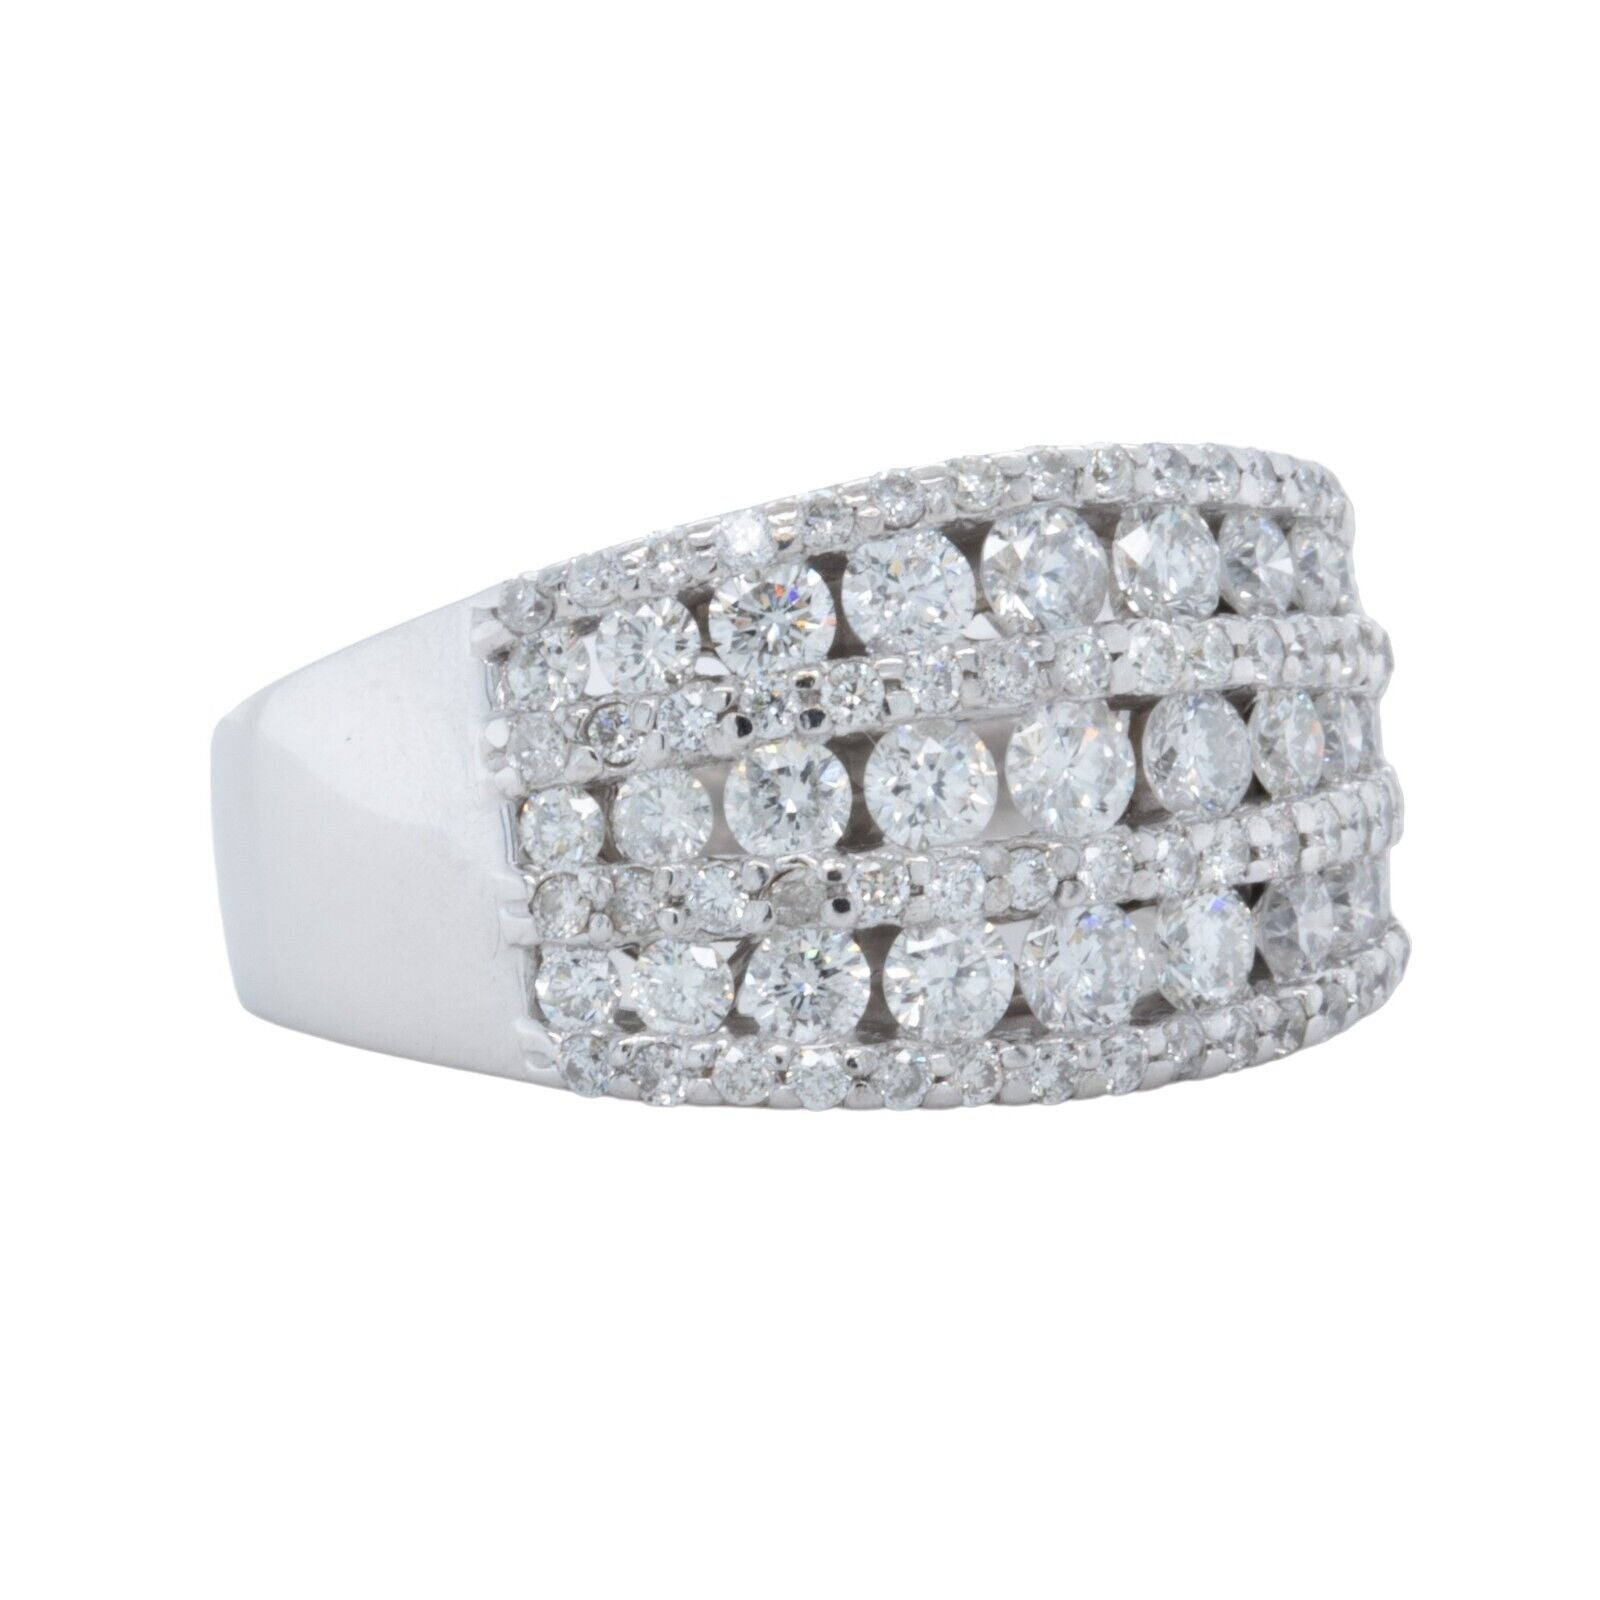 14k White Gold 7 Row Diamond Wedding Ring 1.47ctw G SI1 Size 6